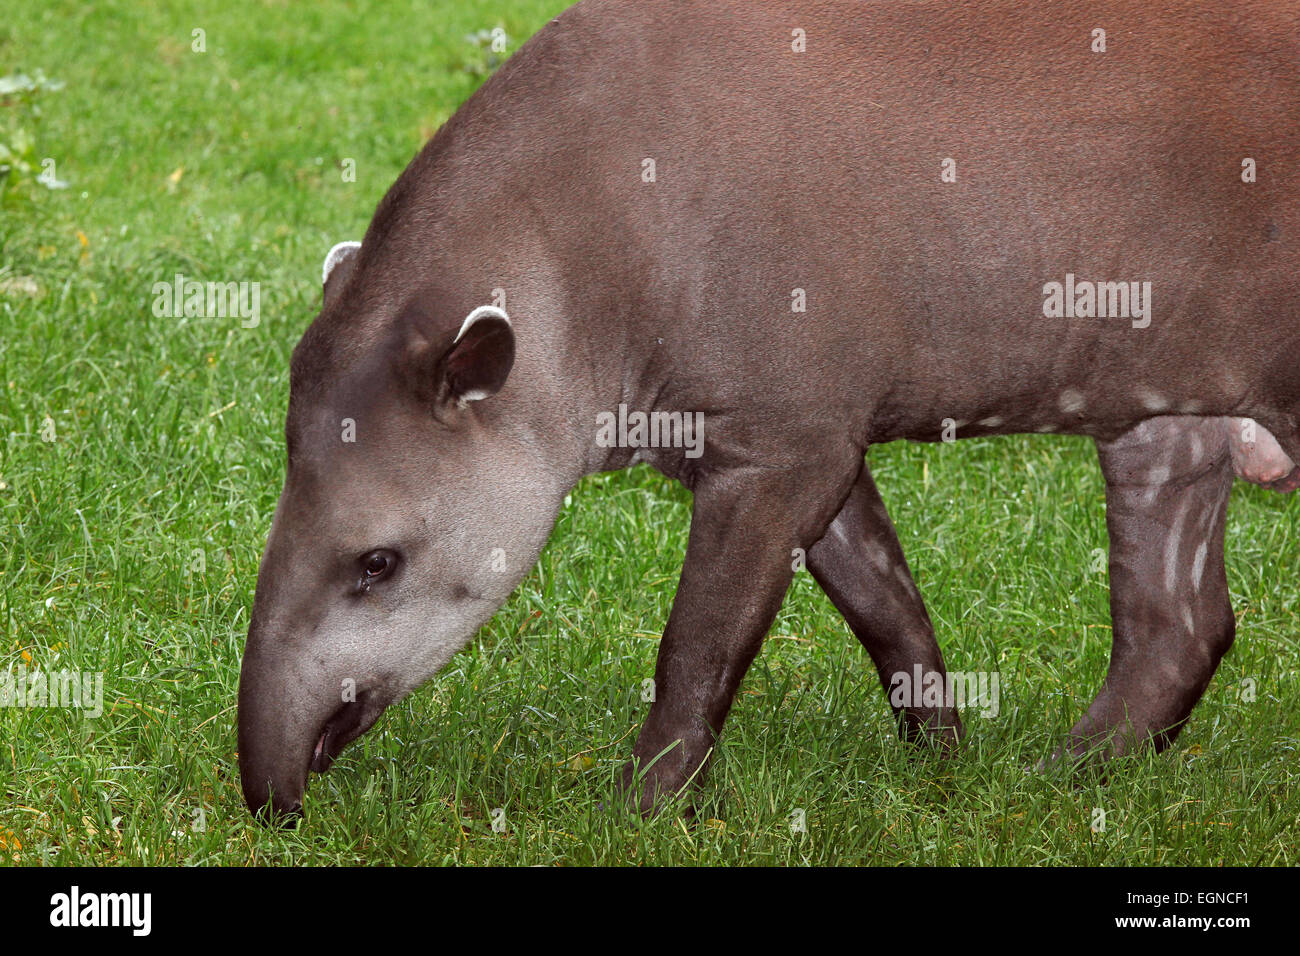 South American or Lowland Tapir (Tapirus terrestris) Stock Photo